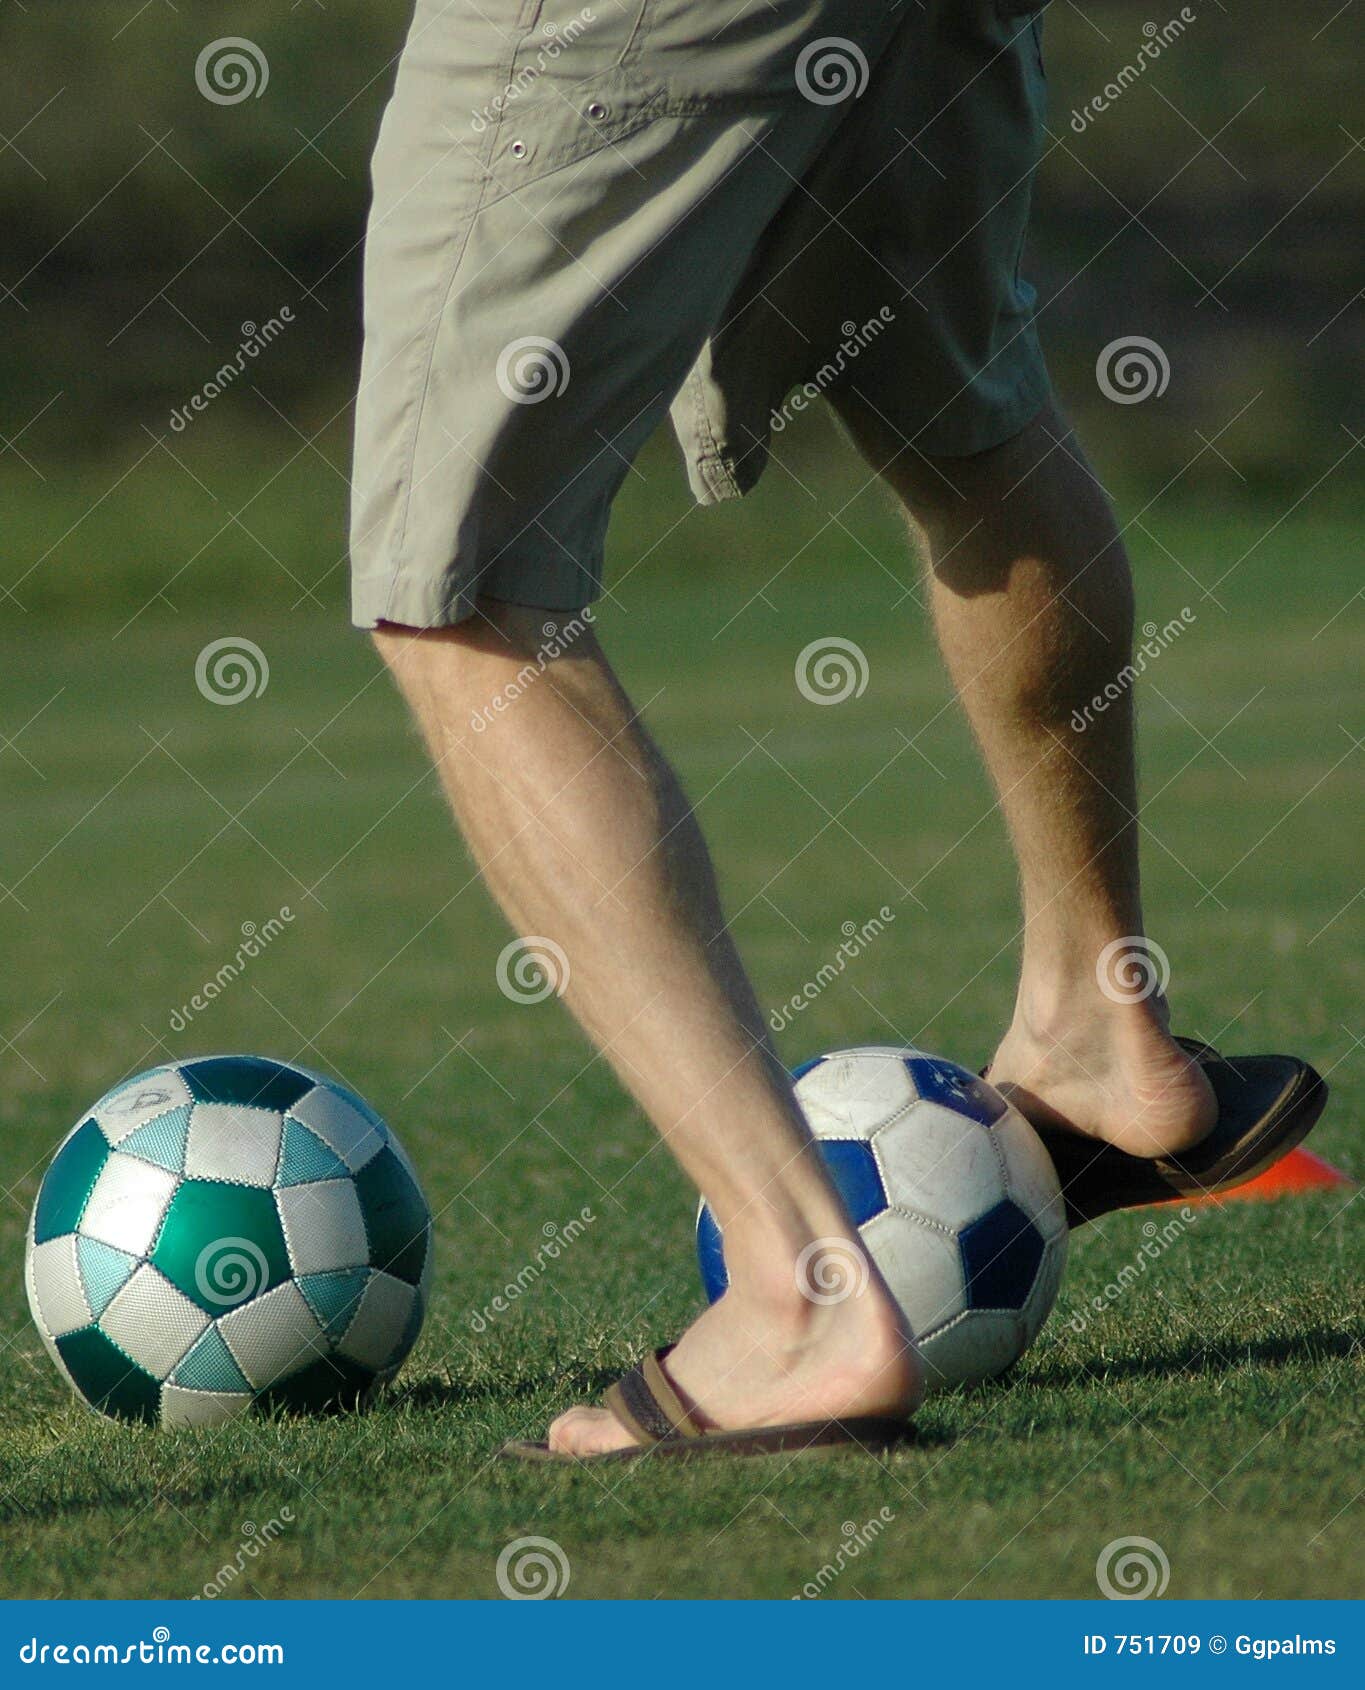 soccer flip flops